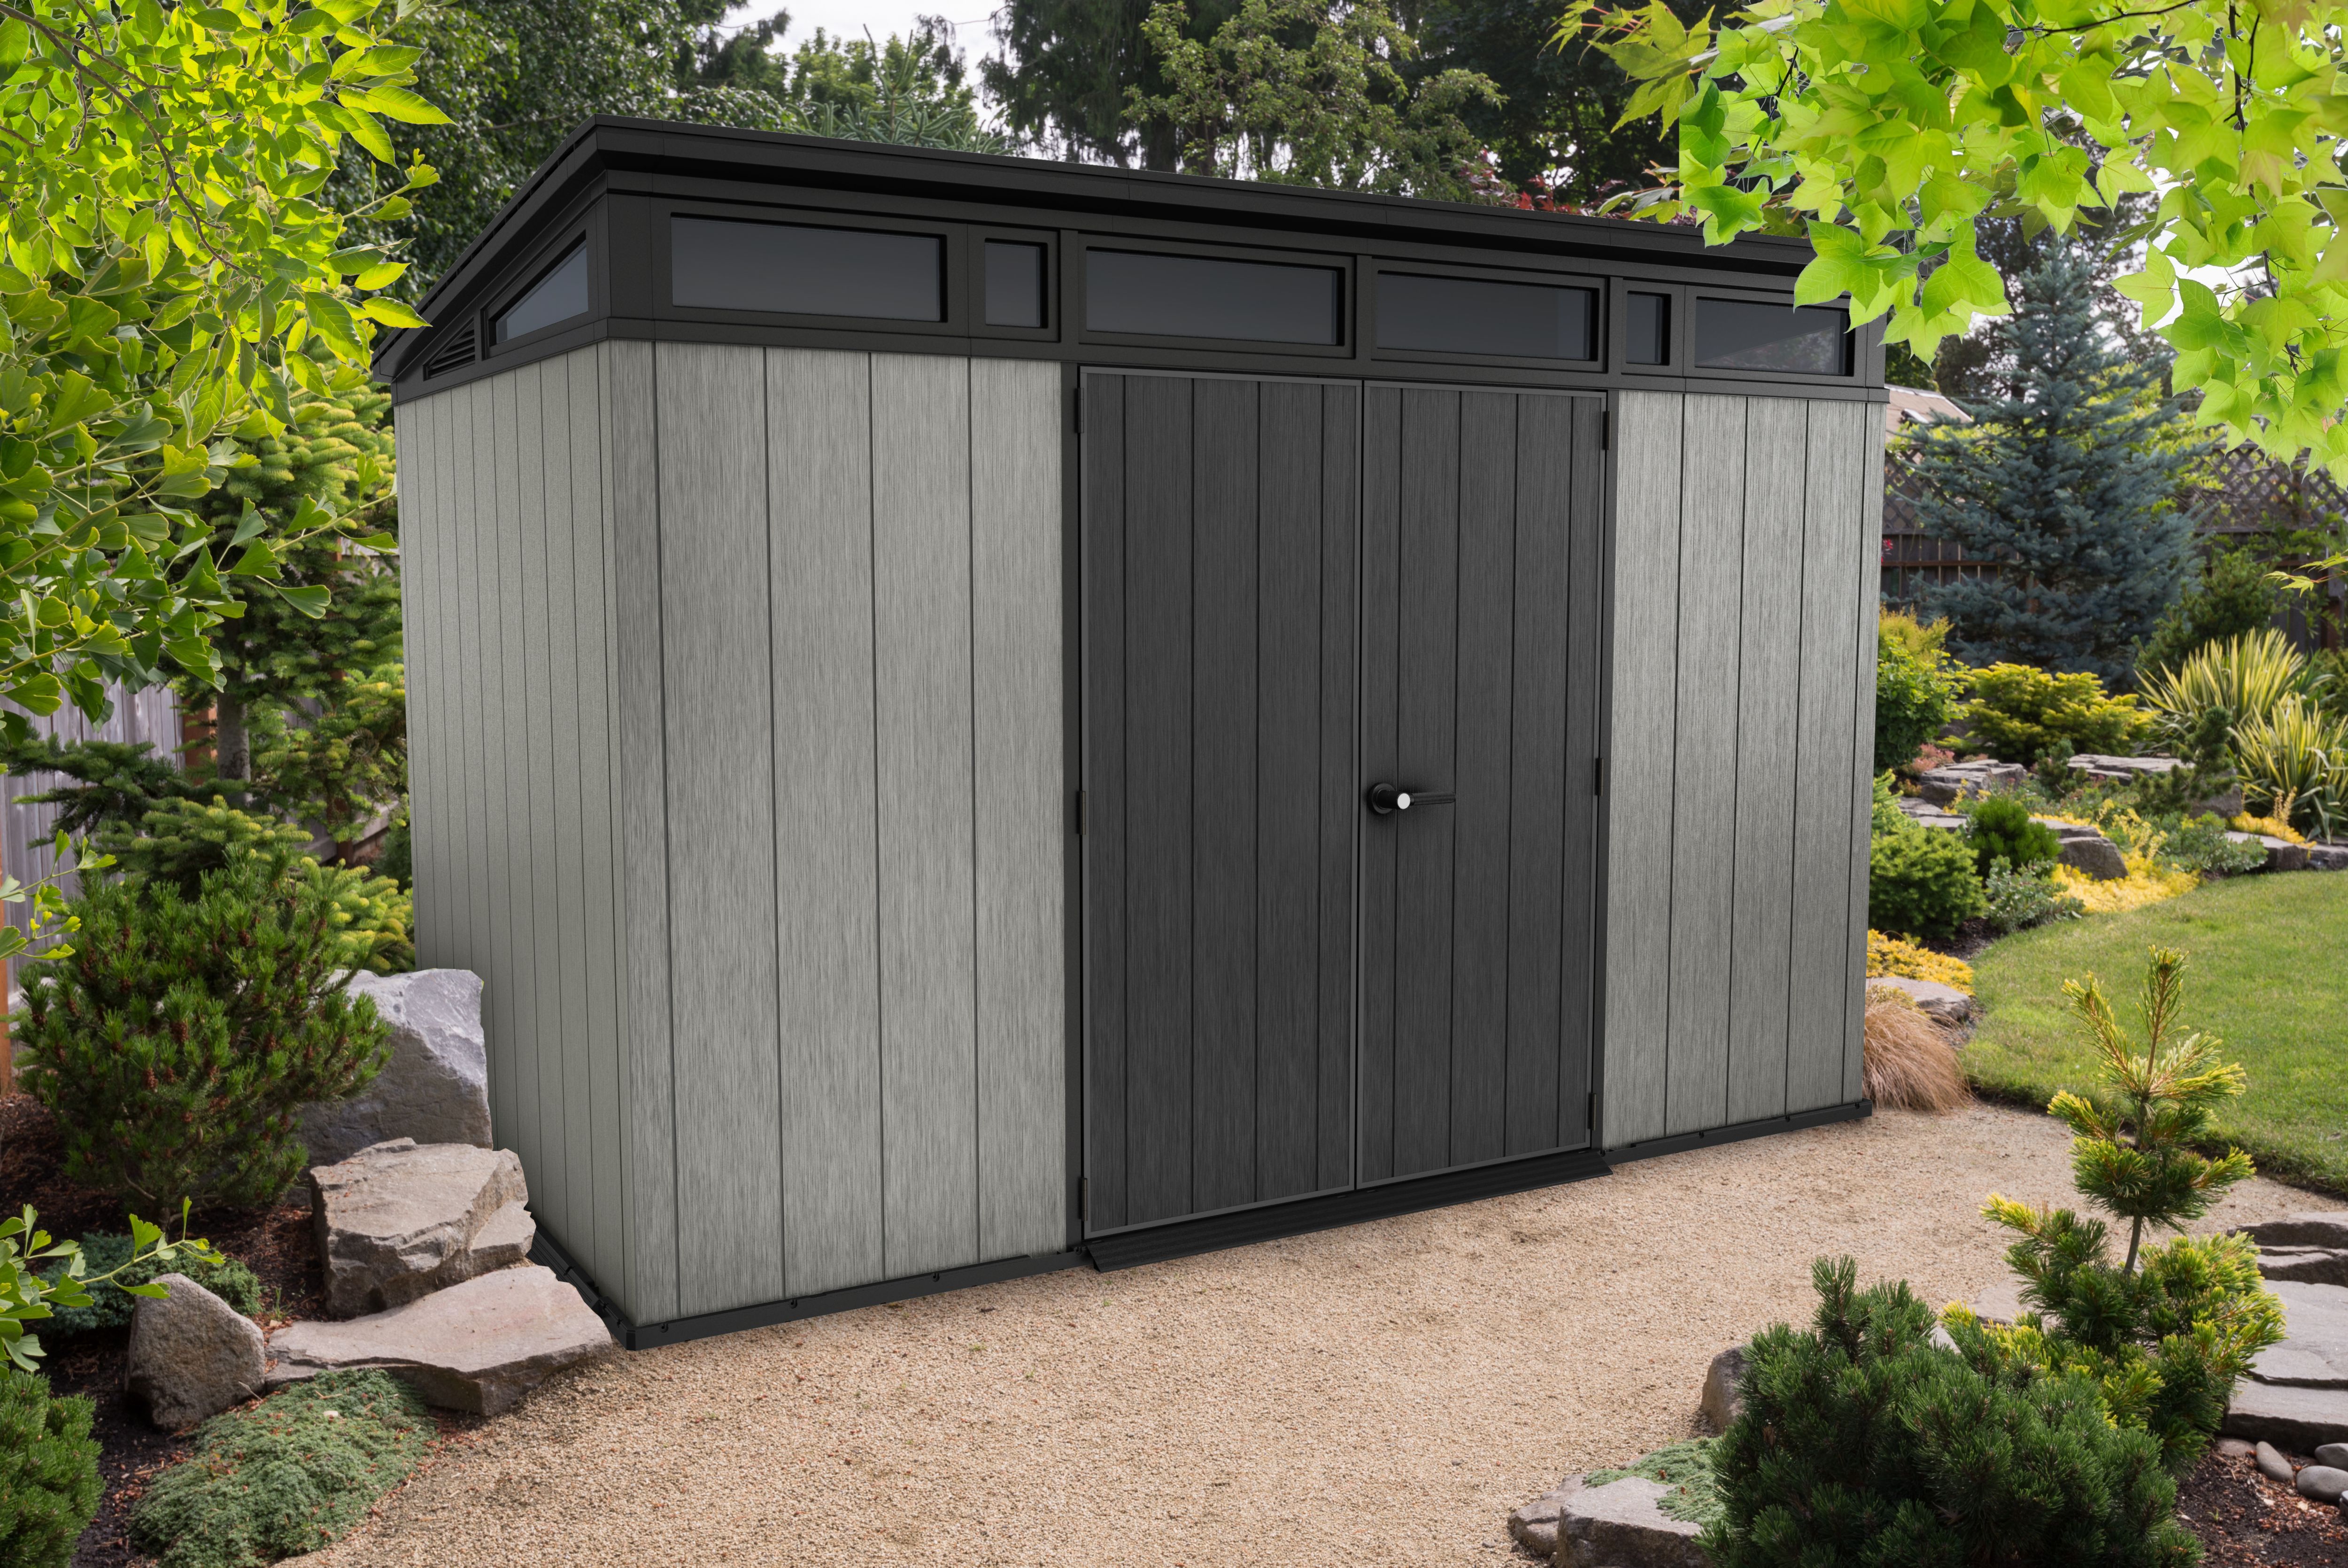 Keter Artisan Grey Double Door Outdoor Pent Garden Storage Shed - 11 x 7ft